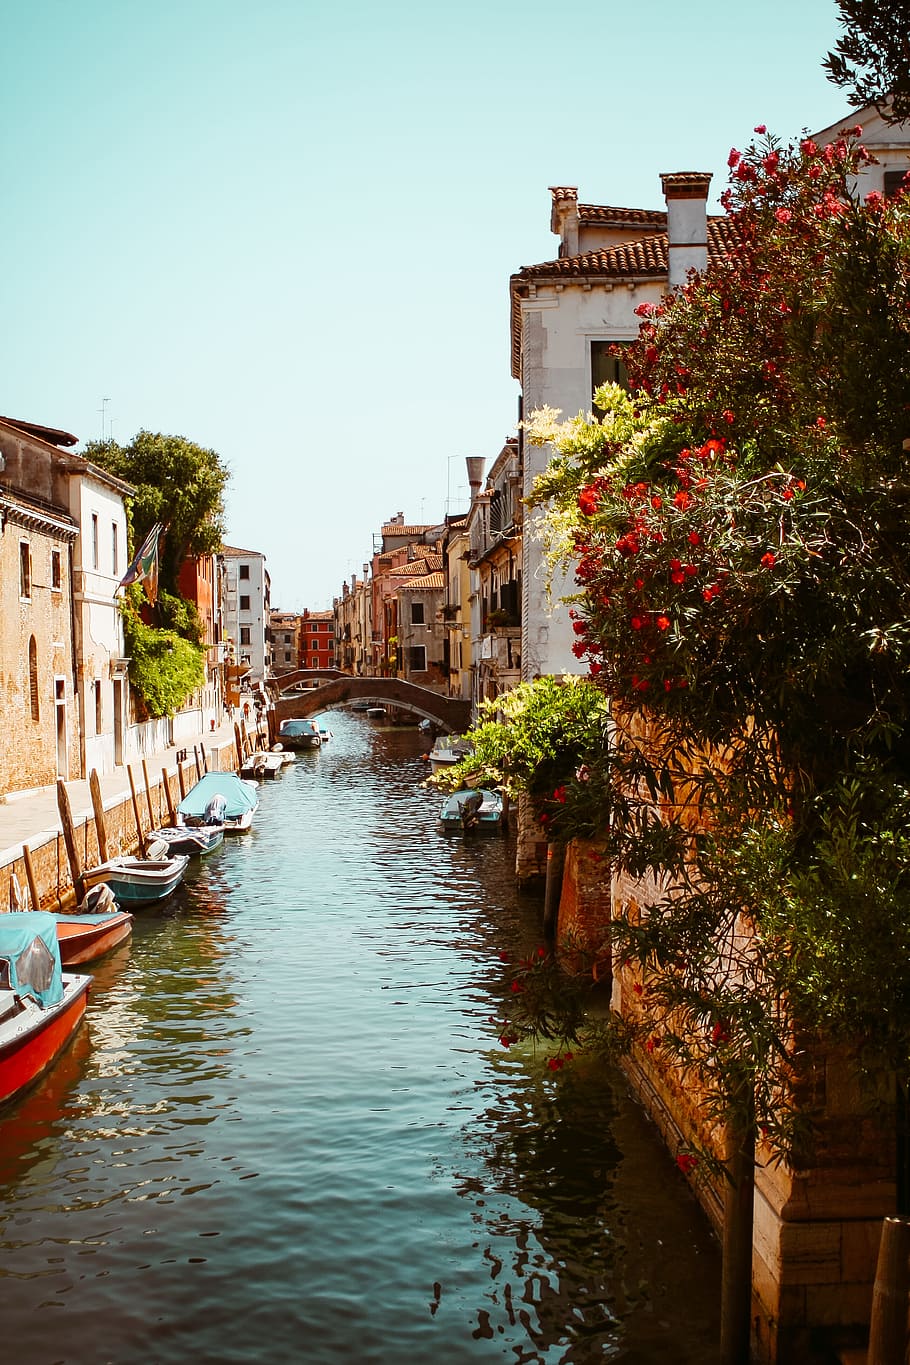 kanal venesia, italia, arsitektur, perahu, kanal, kota, eropa, bunga, bersejarah, historis